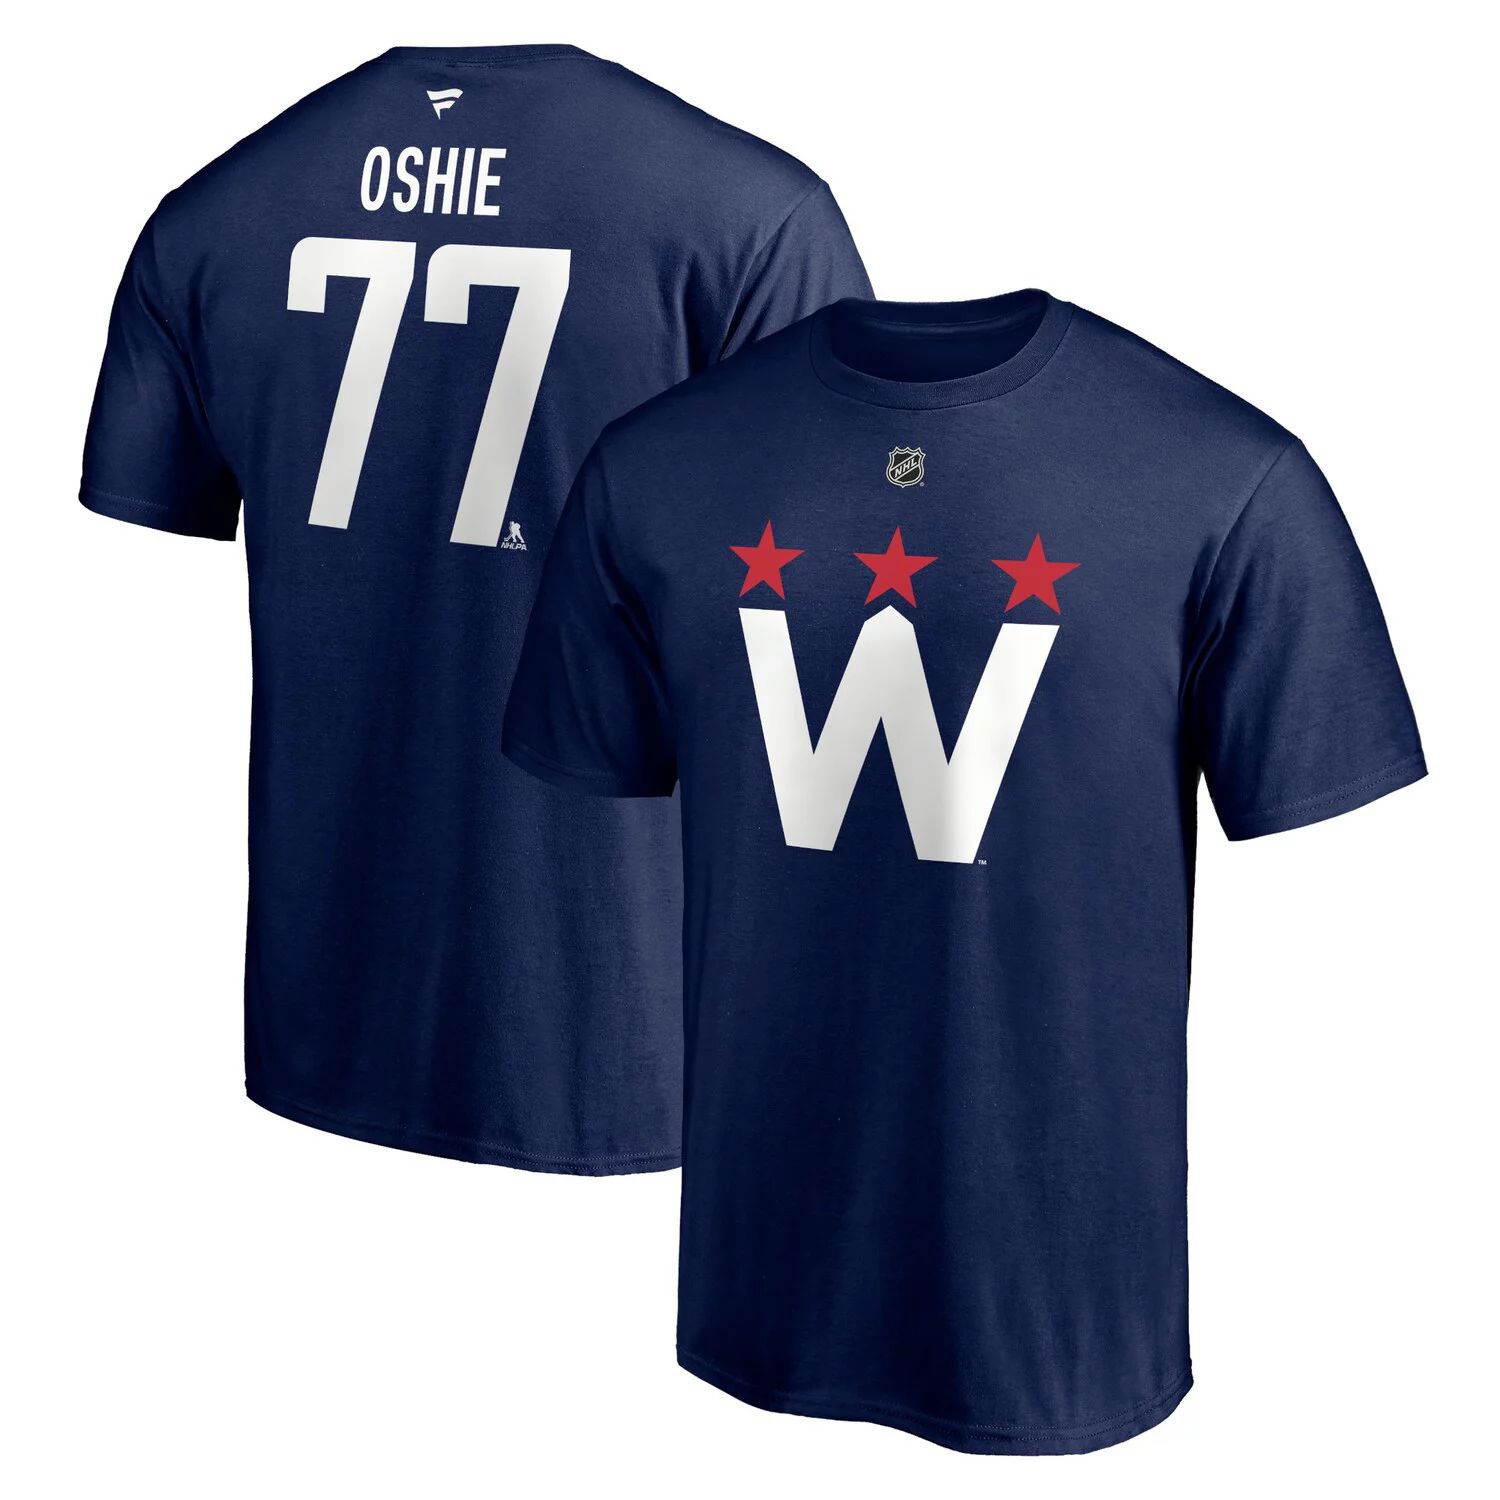 Мужская фирменная футболка TJ Oshie Navy Washington Capitals 2020/21 с альтернативным аутентичным именем и номером стека Fanatics